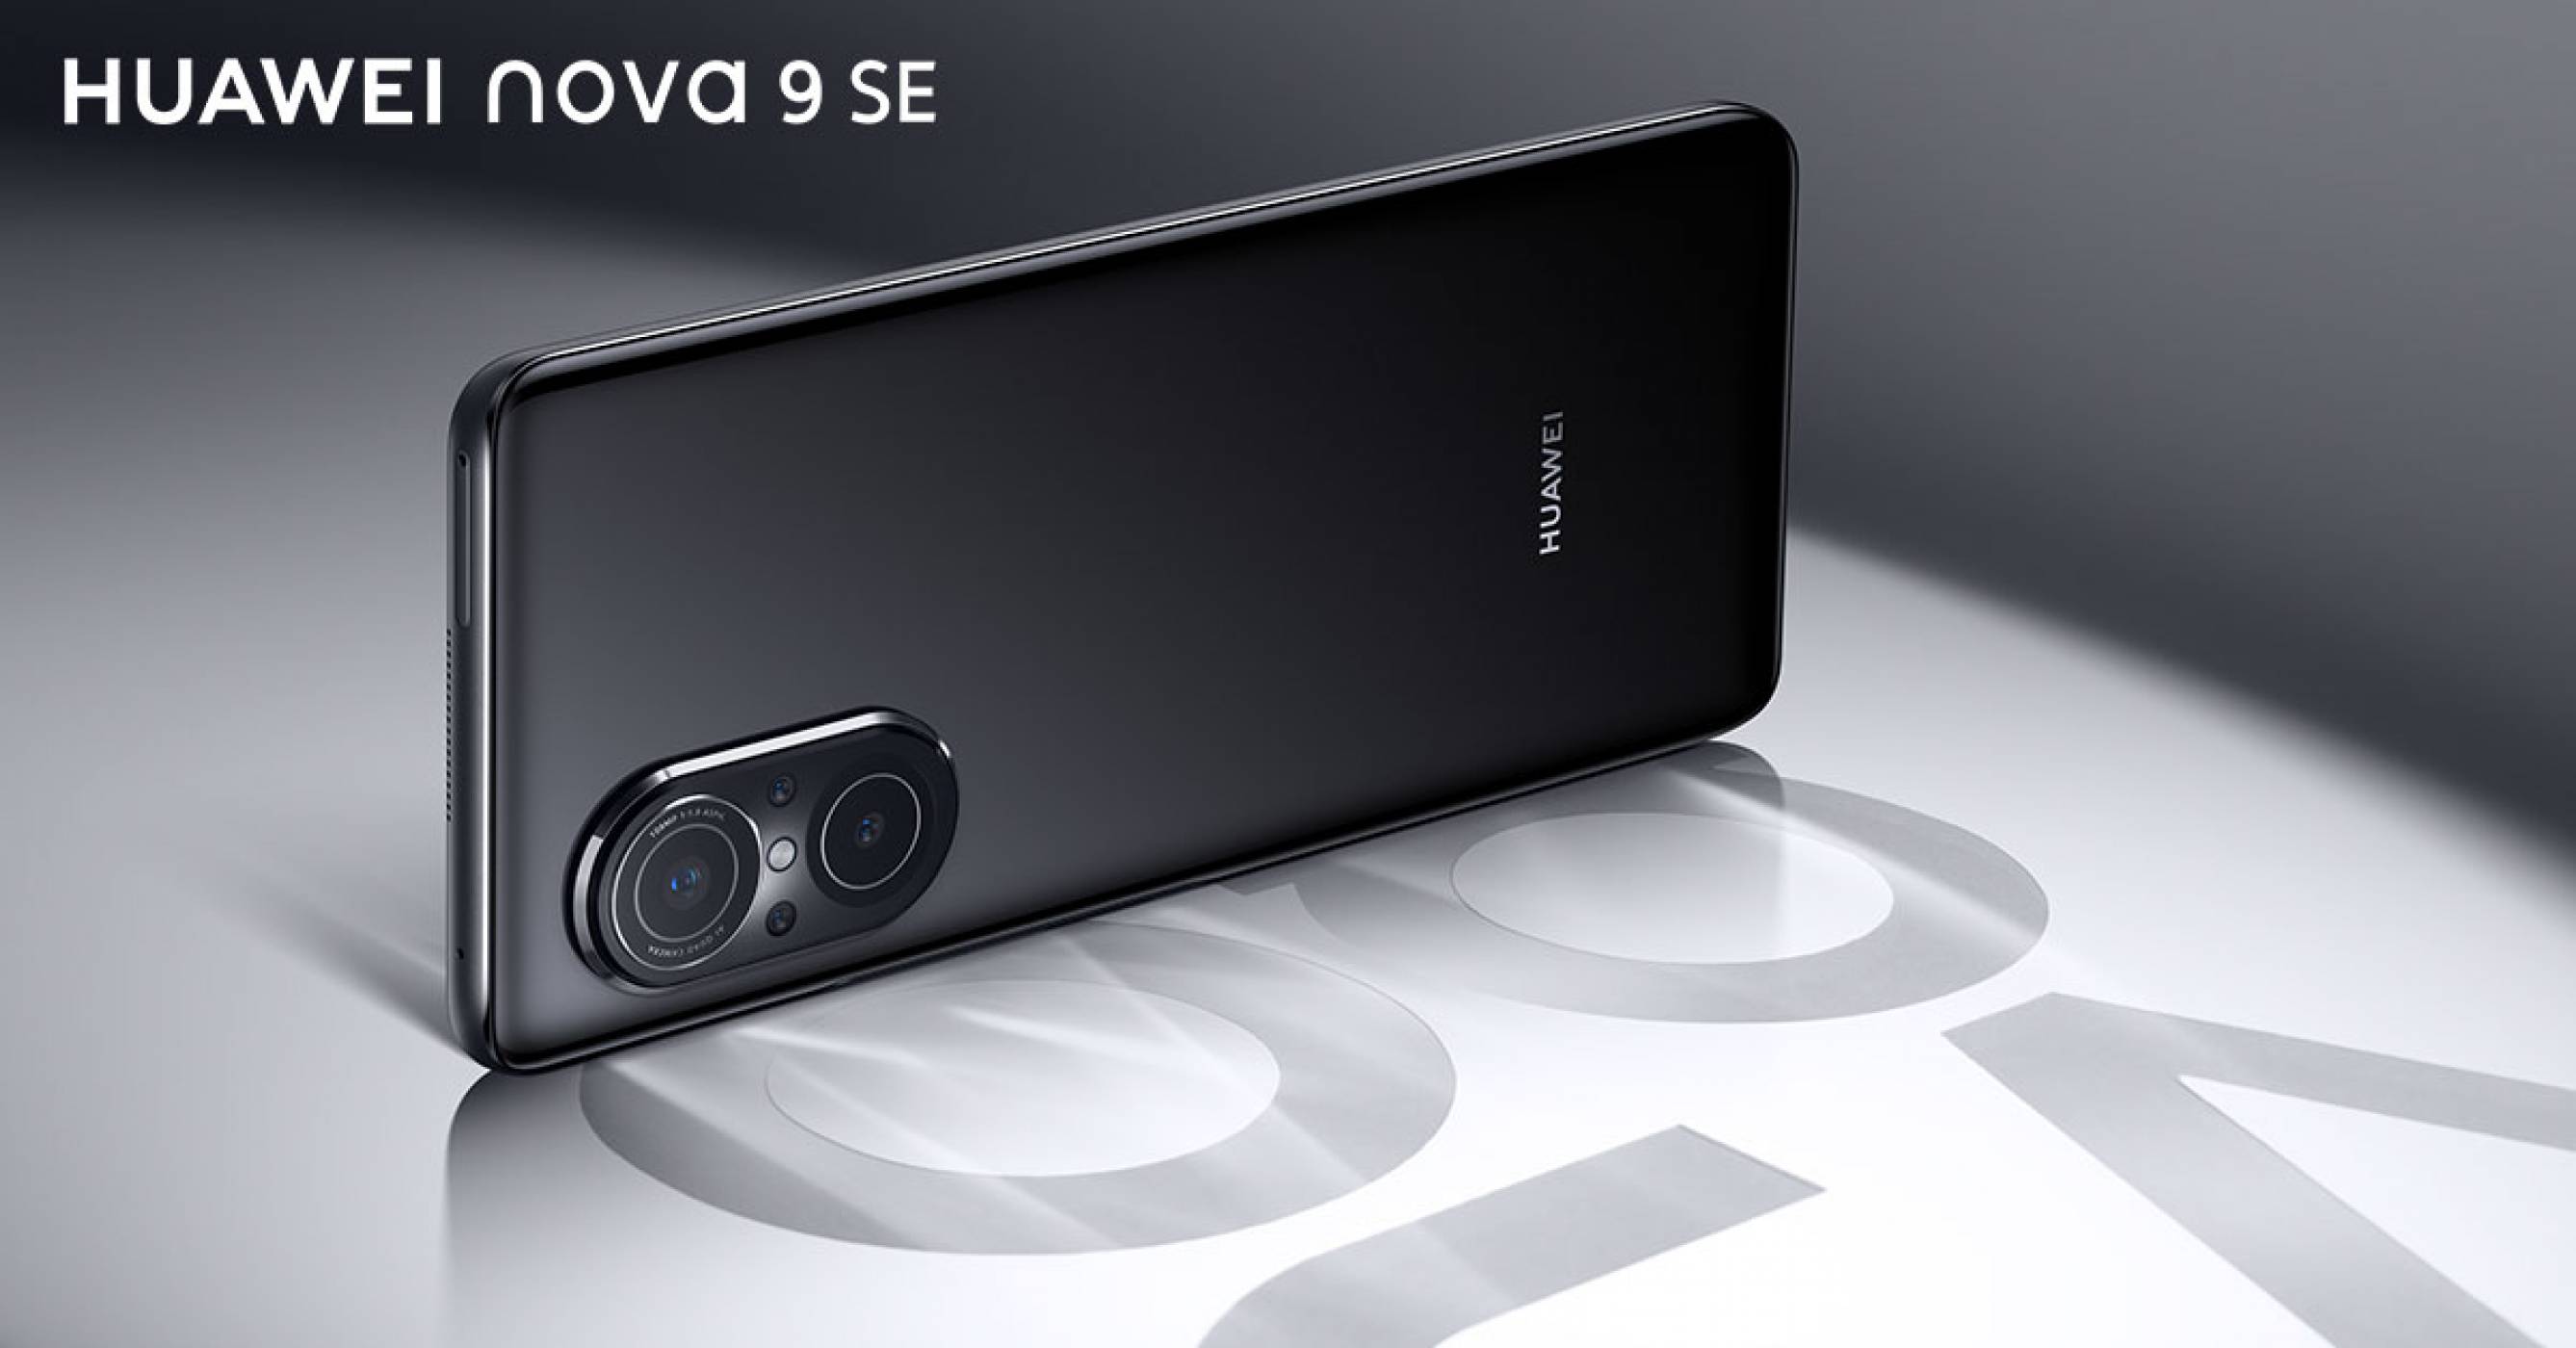 Huawei посреща очакванията на новото поколение с иновативния смартфон nova 9 SE